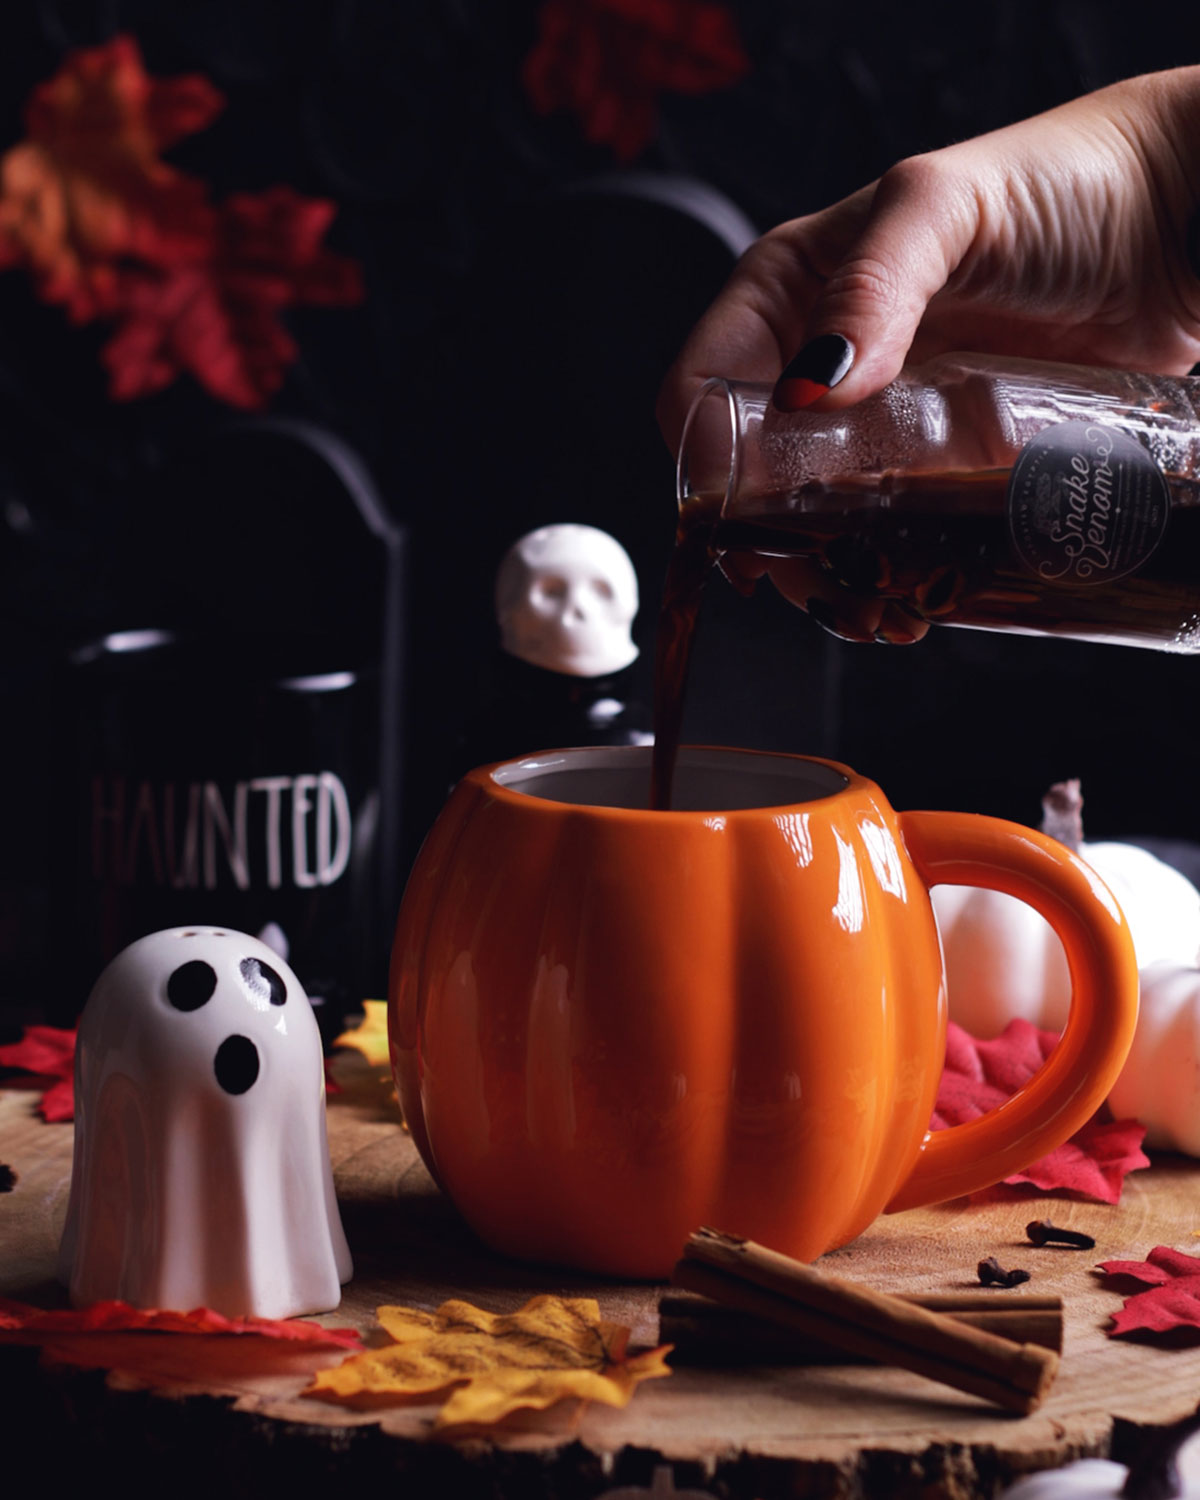 a hand pouring coffee into the pumpkin shaped mug